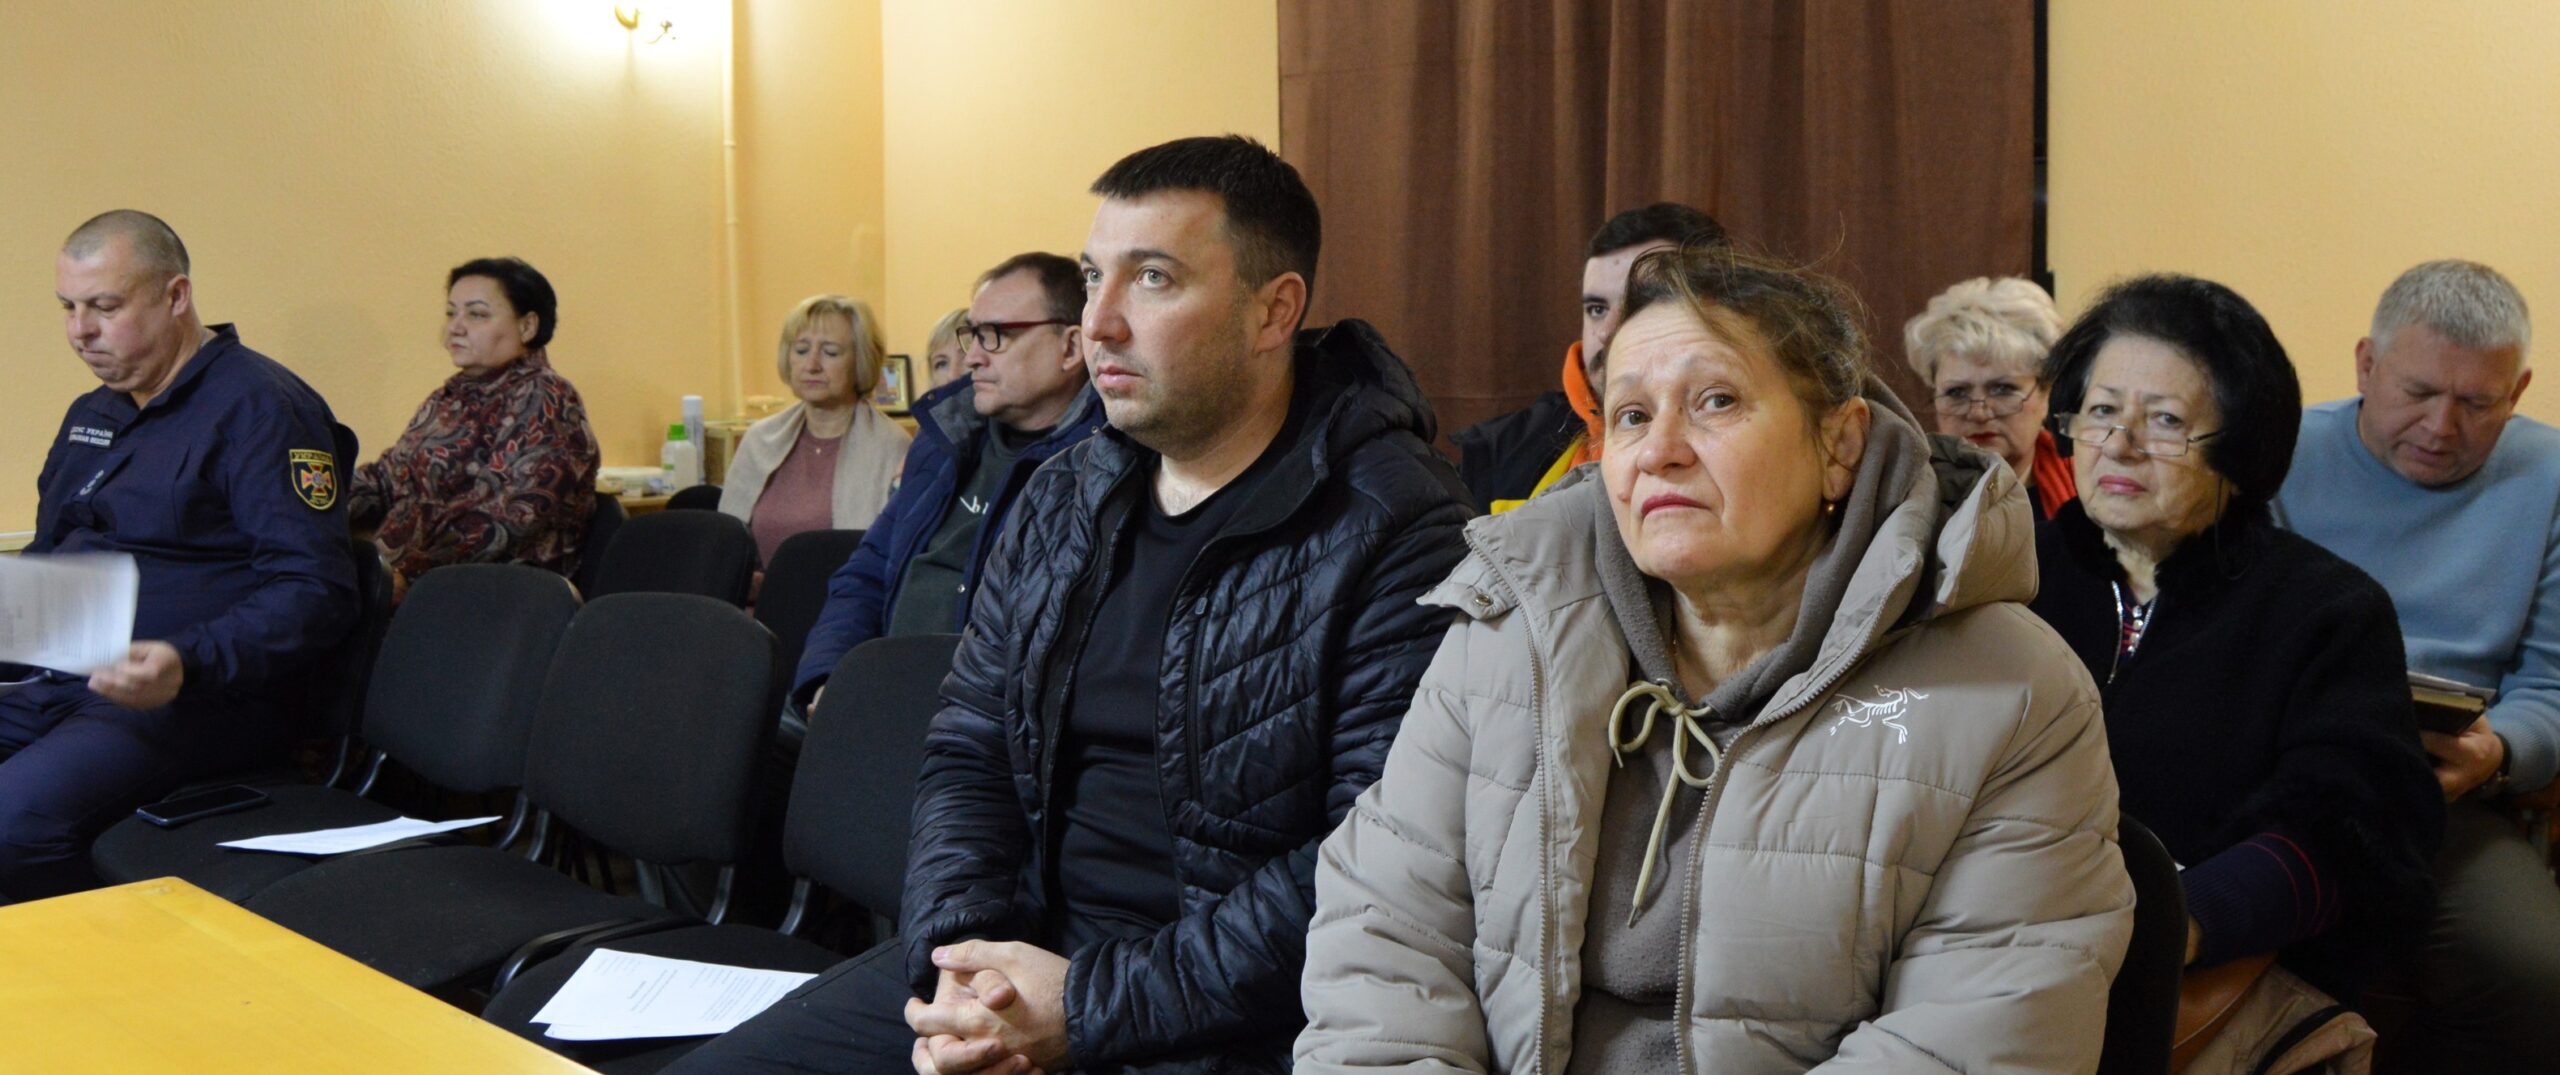 Чрезвычайная противоэпизоотическая комиссия сняла карантинные ограничения по бешенству в одном из сел Белгород-Днестровщины.